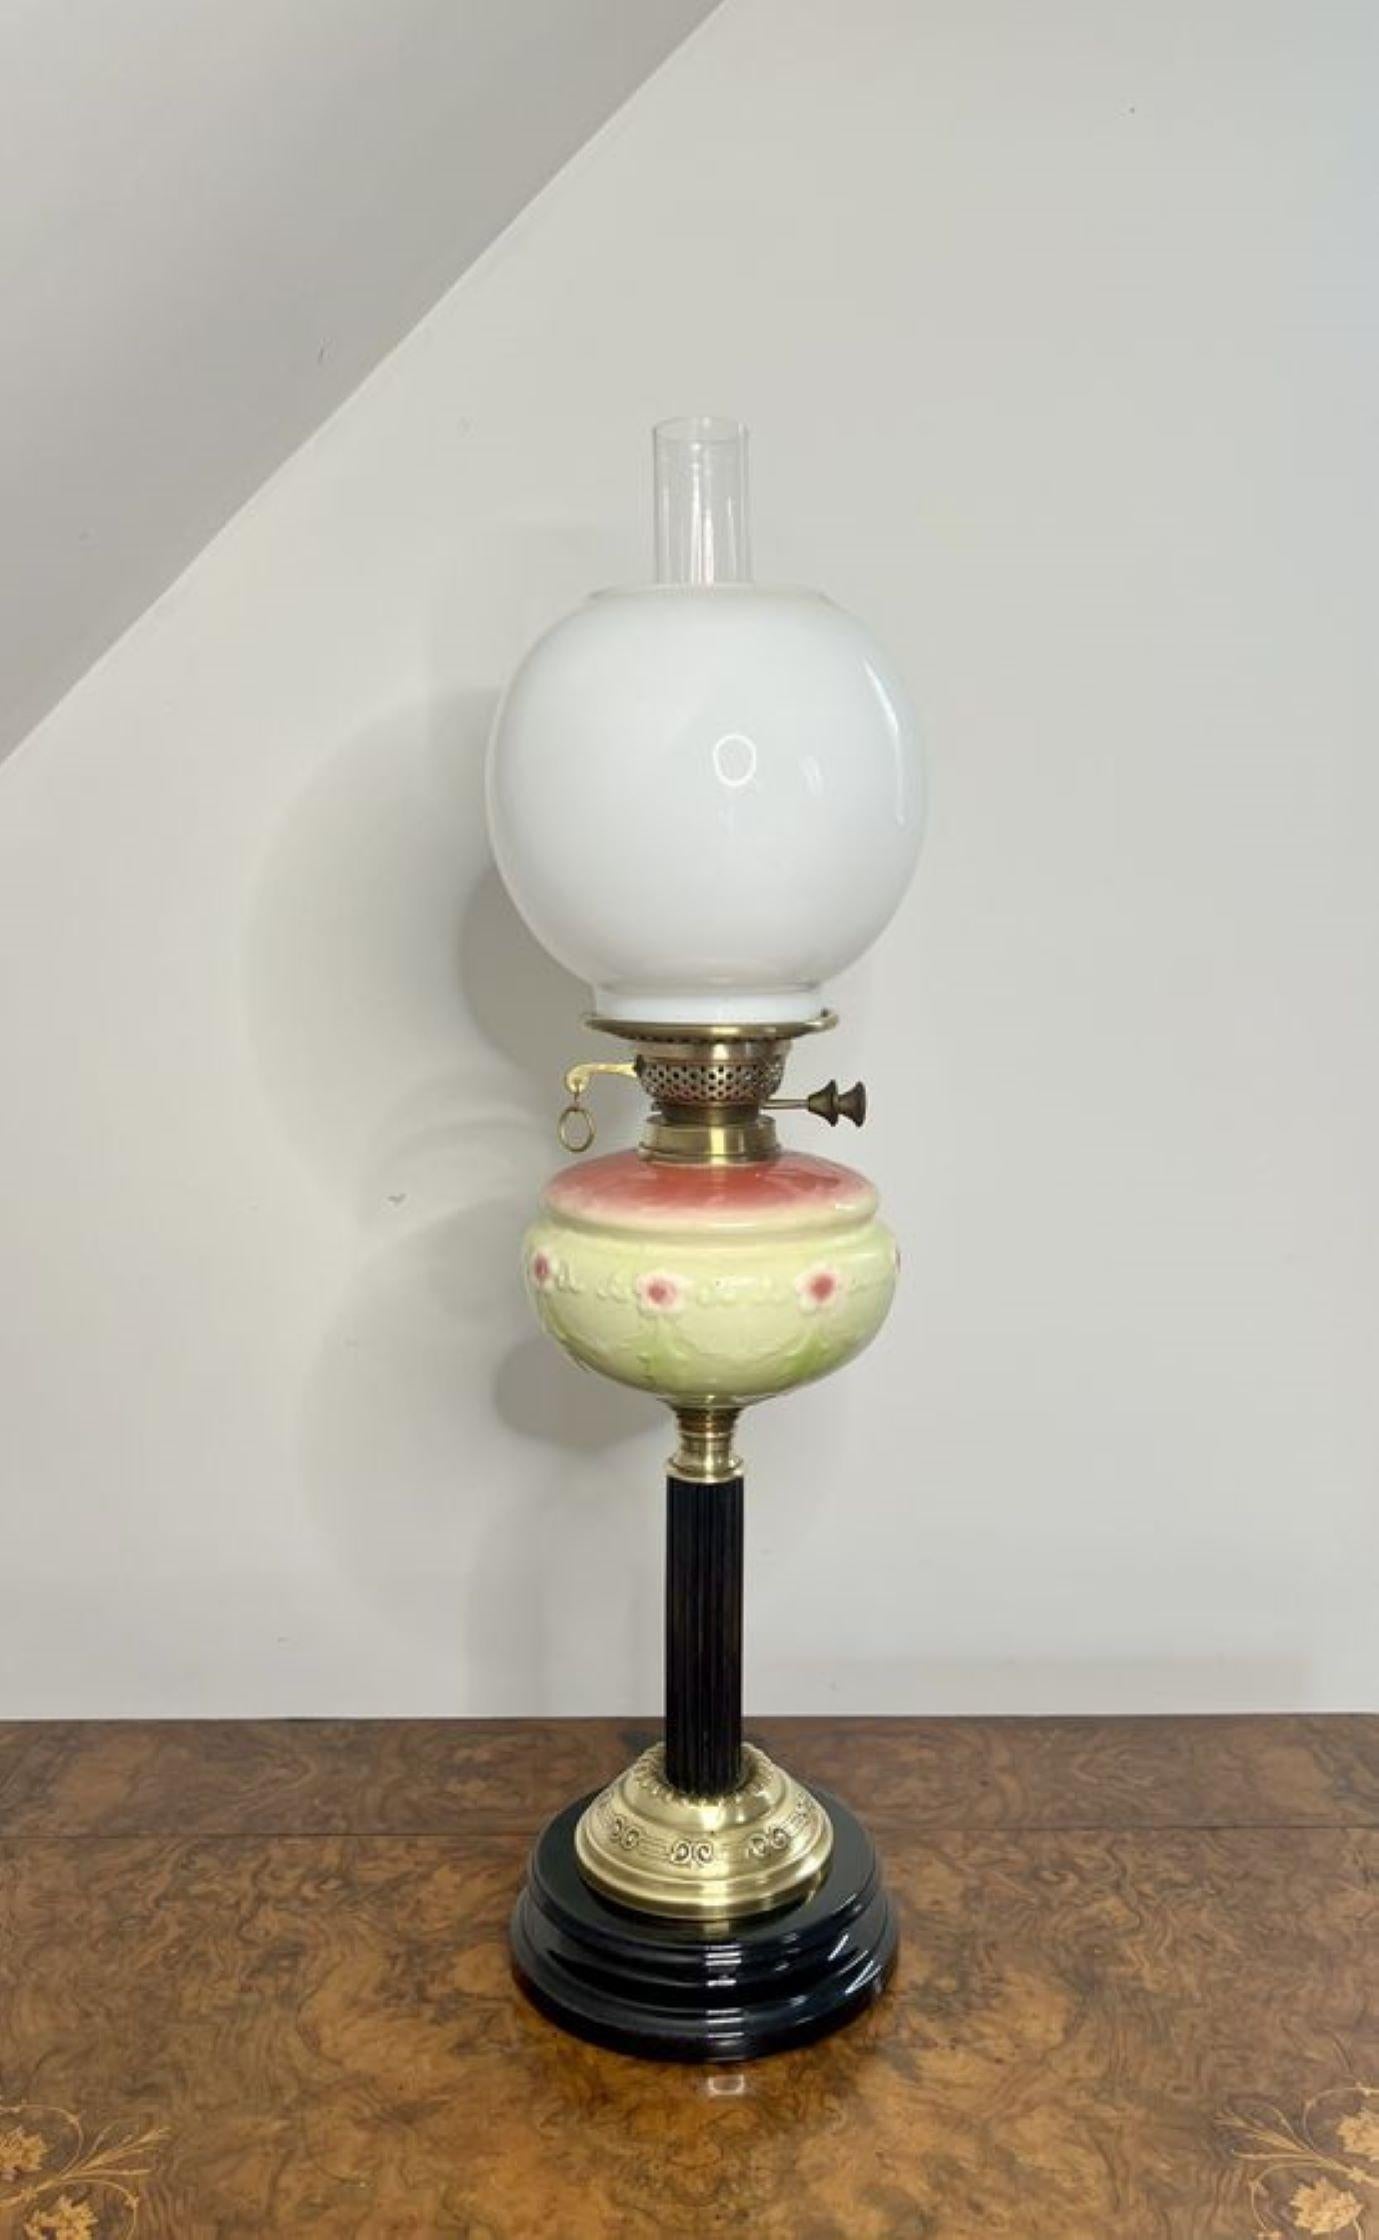 Magnifique lampe à huile victorienne ancienne de qualité en laiton avec un abat-jour globulaire en verre blanc, avec un réservoir en verre de vaseline avec un fond jaune et des fleurs roses, soutenu par une colonne en bois, reposant sur une base